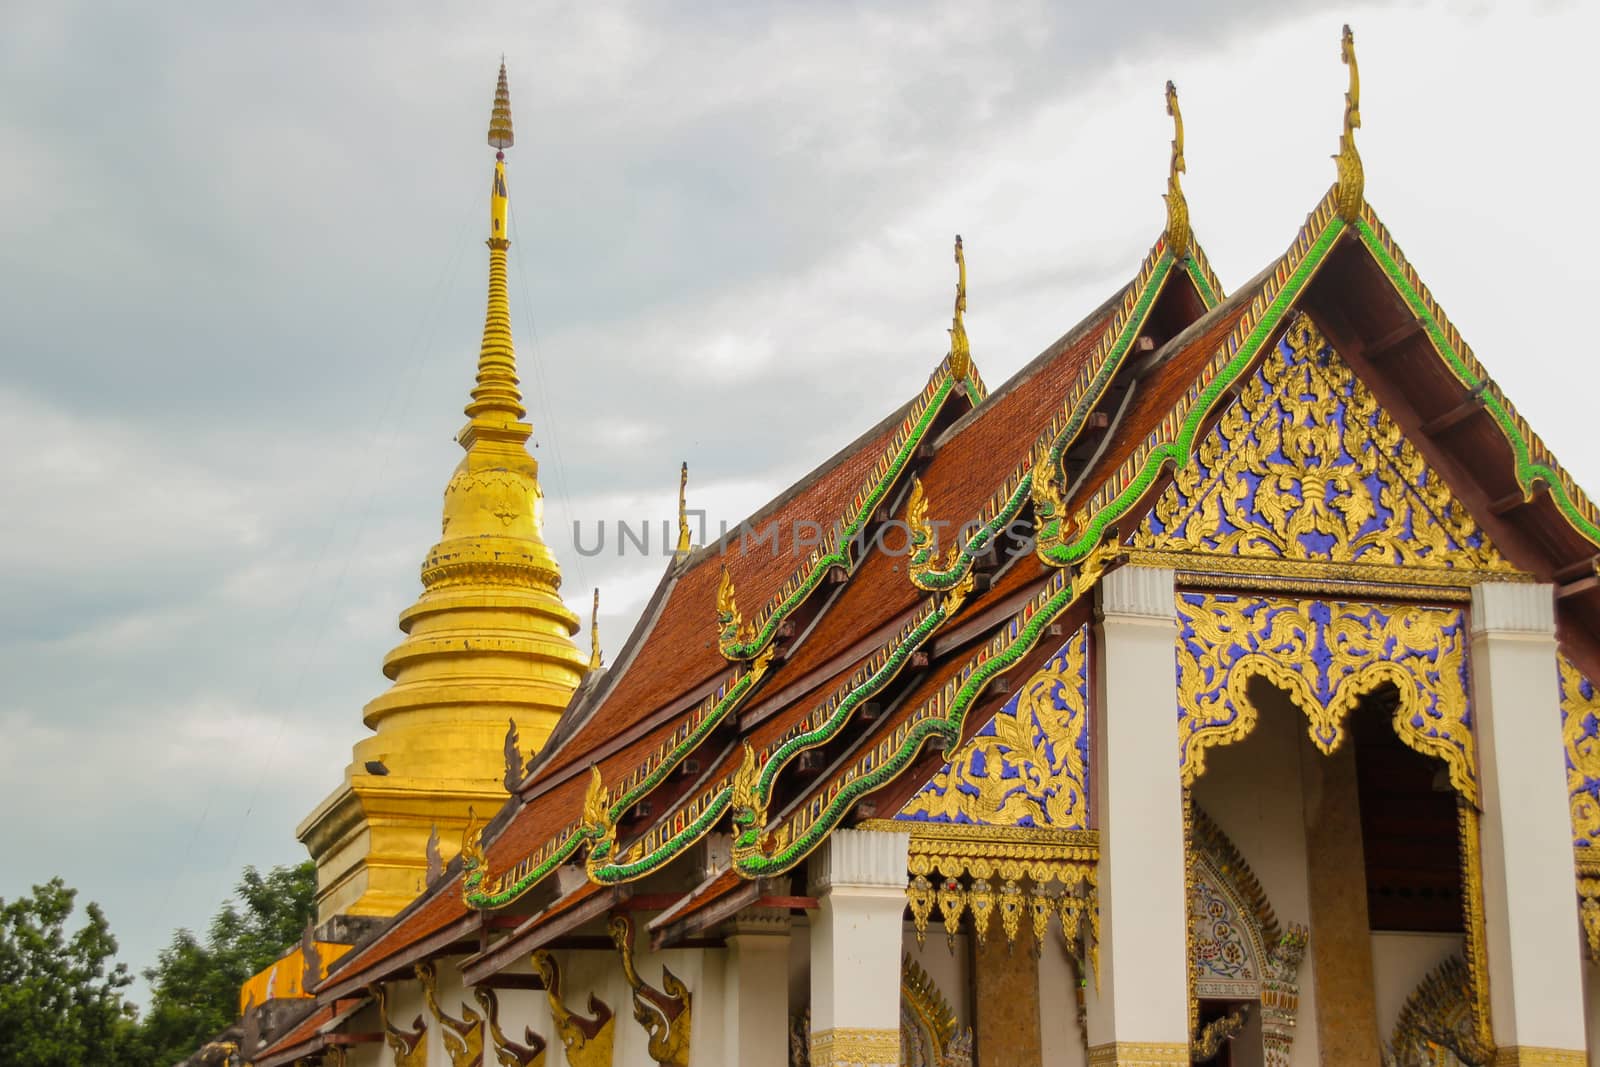 Wat phra that chang kham,NAN,THAILAND by suthipong